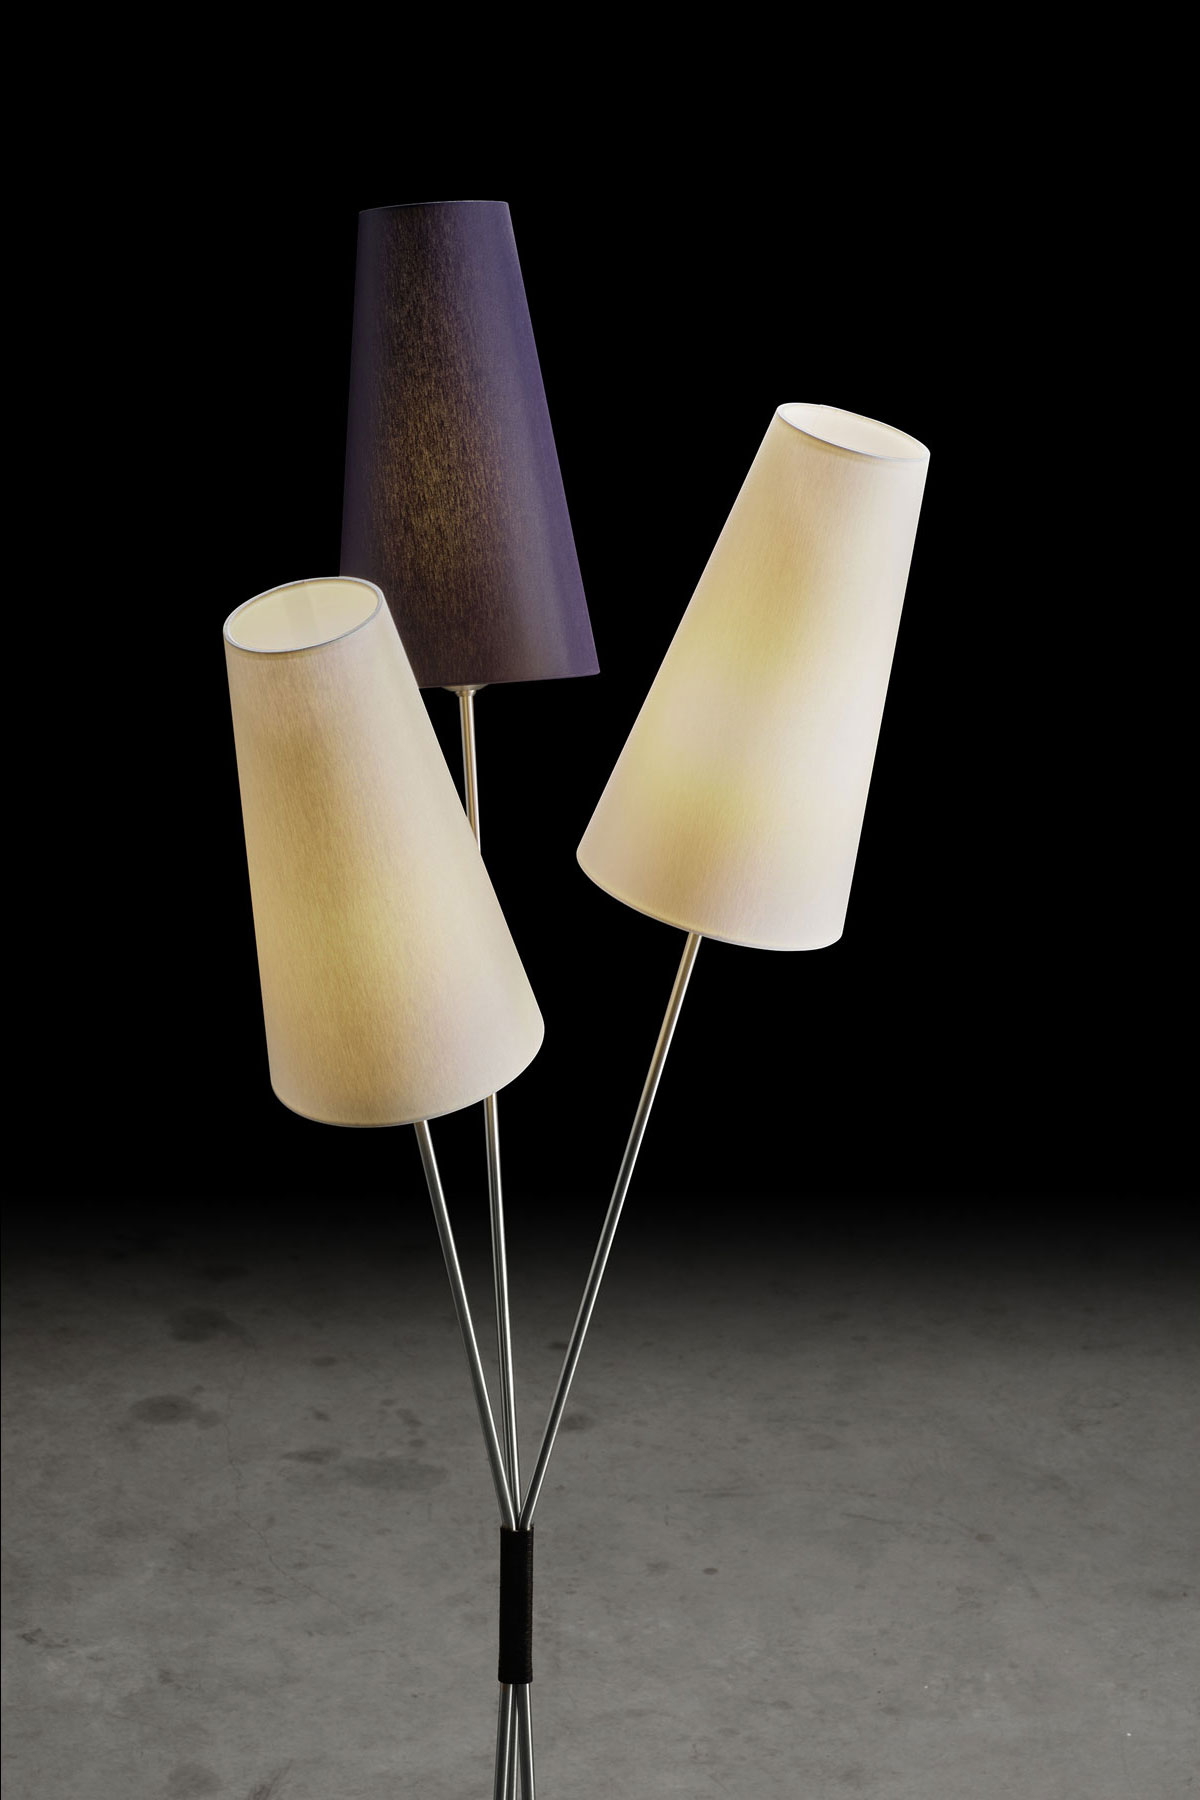 FIFTIES – Stehlampe im 50er Jahre-Look mit drei Schirmen im Bündel, viele Farben: Gestell in Nickel matt, Schirme in Hellgrau, Dunkelblau, Weiß